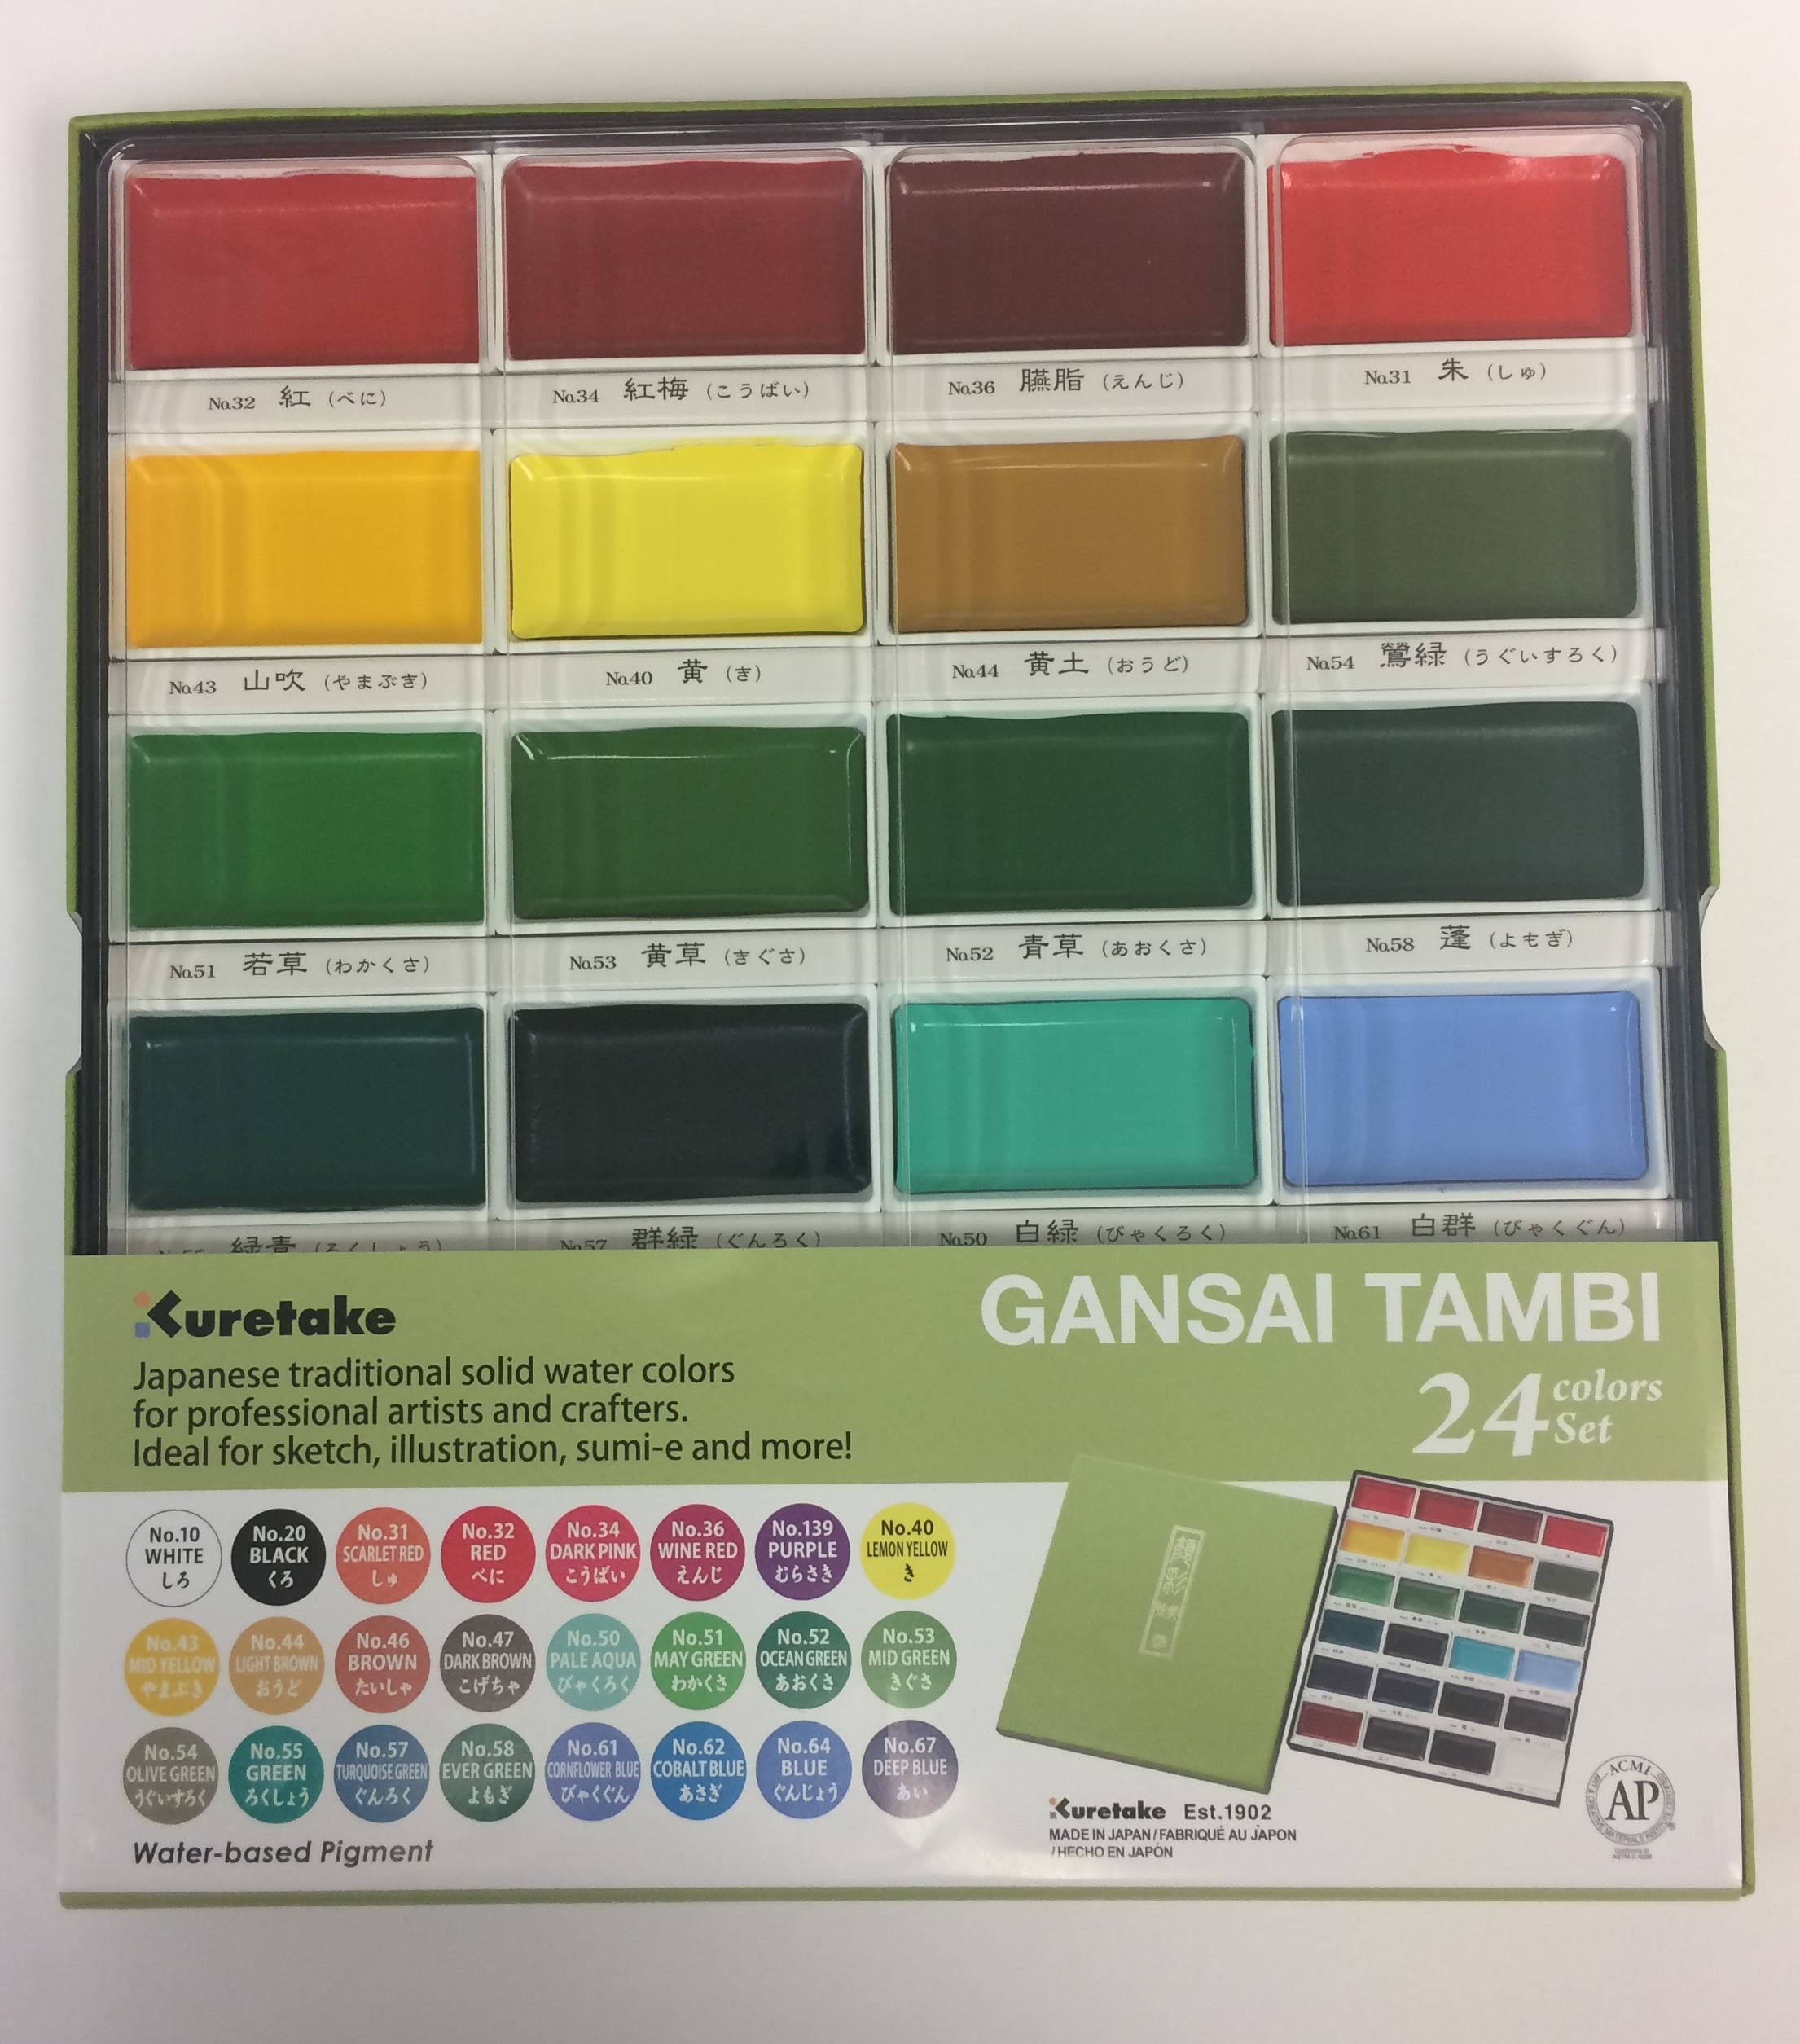 Gansai Tambi Watercolors - Individual Pan Turquoise Green Deep 057